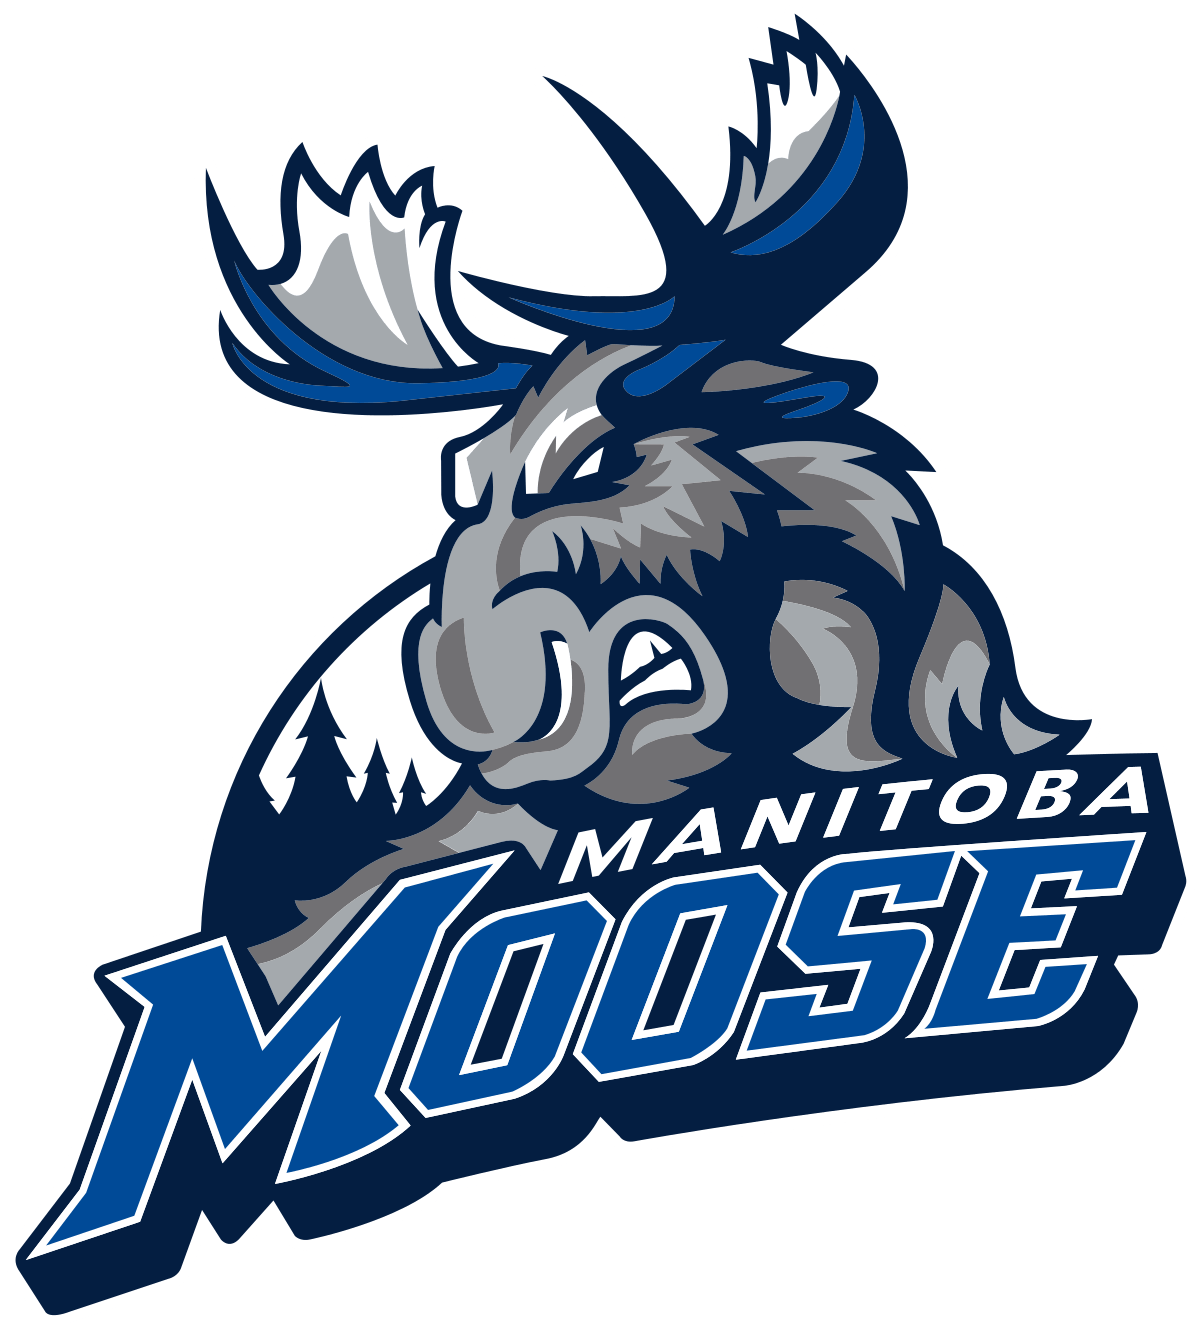 Moose Logo - Manitoba Moose